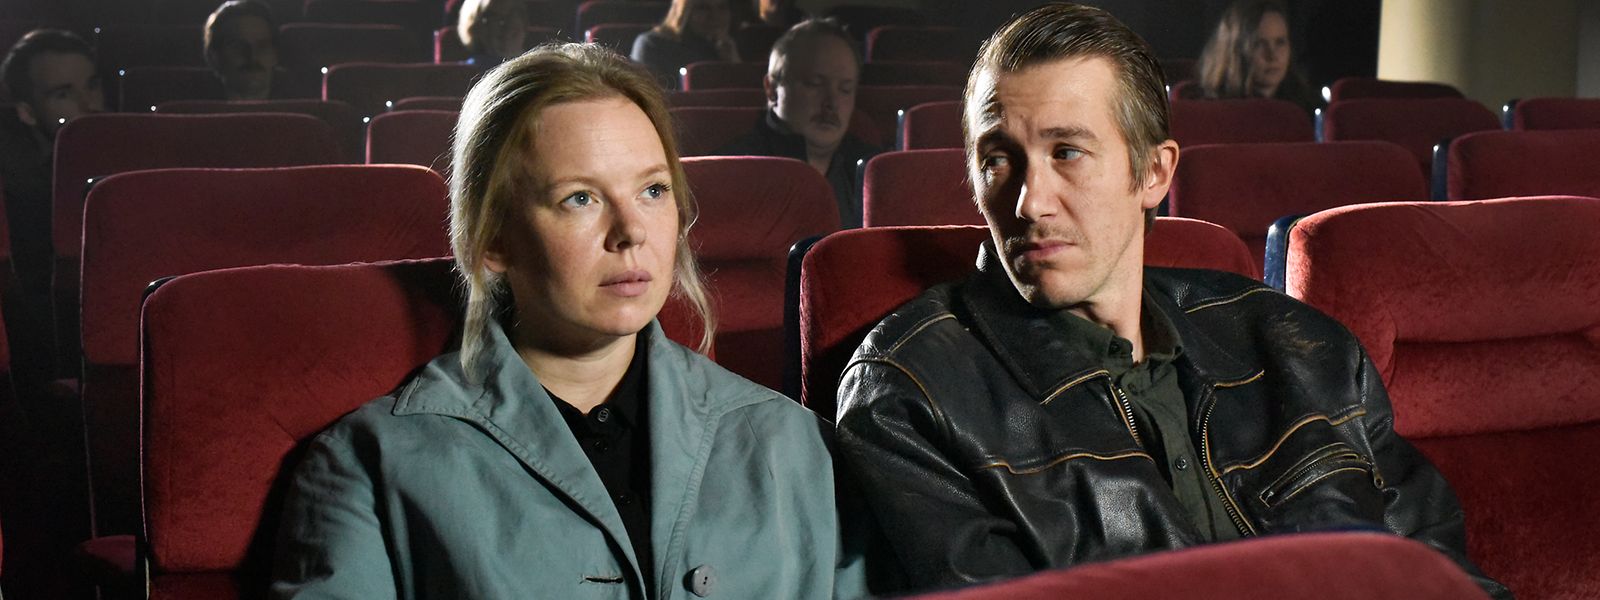 Wie aus der Zeit gefallene Einstellungen: Ansa (Alma Pöysti) und Holappa (Jussi Vatanen) beim Kino-Date in Aki Kaurismäkis „Les feuilles mortes“.